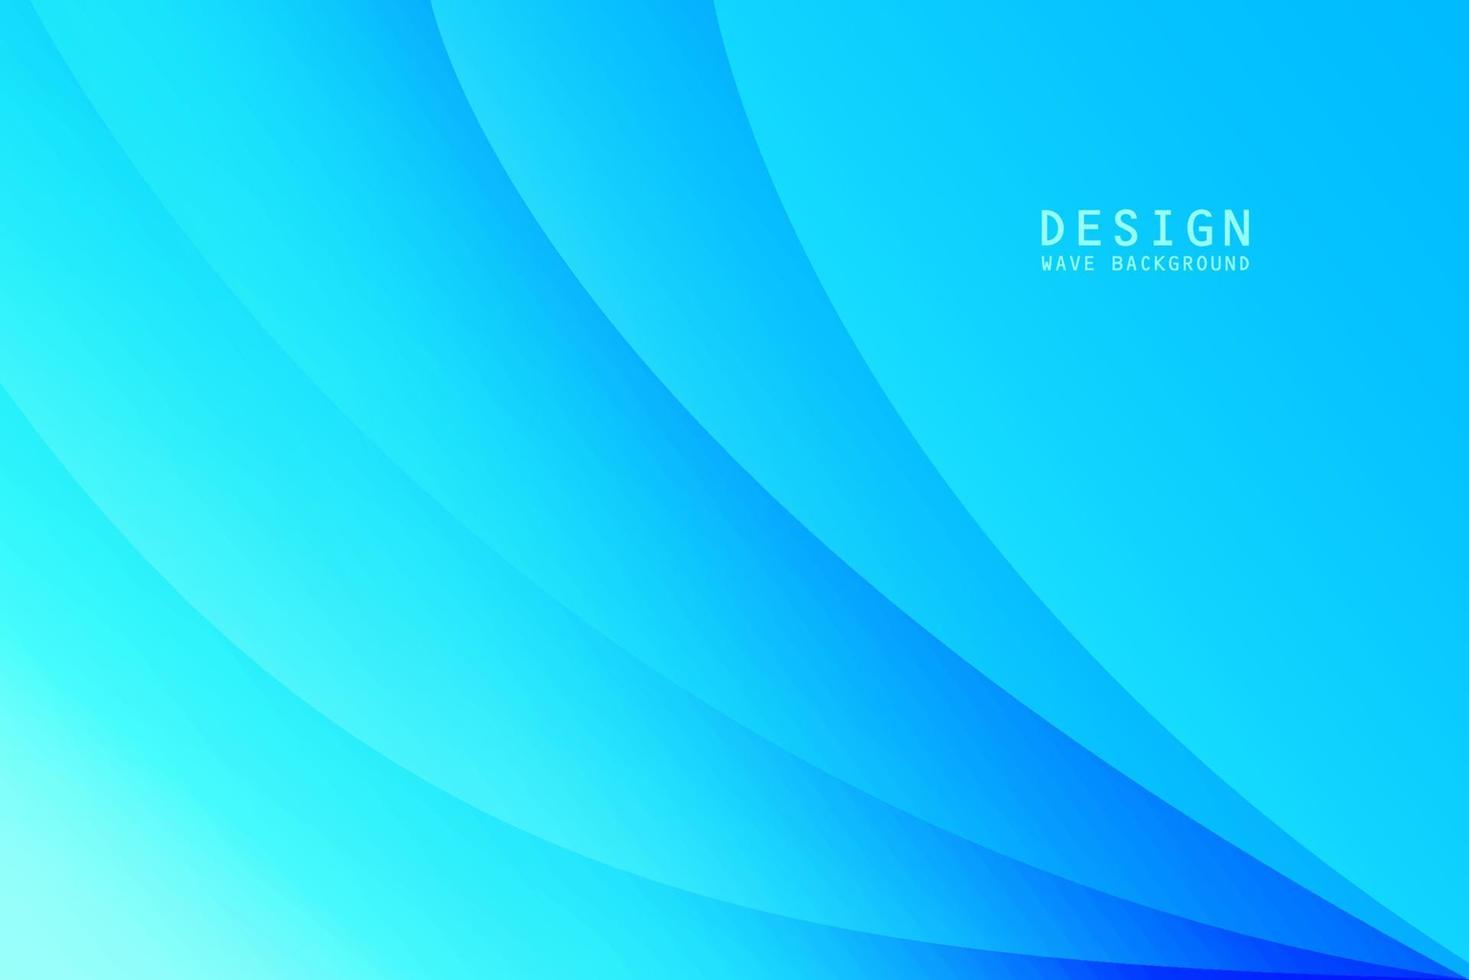 plantilla de diseño de banner de fondo de onda azul para volante, diseño de carteles de negocios, presentación de negocios, promoción de ventas y publicidad vector